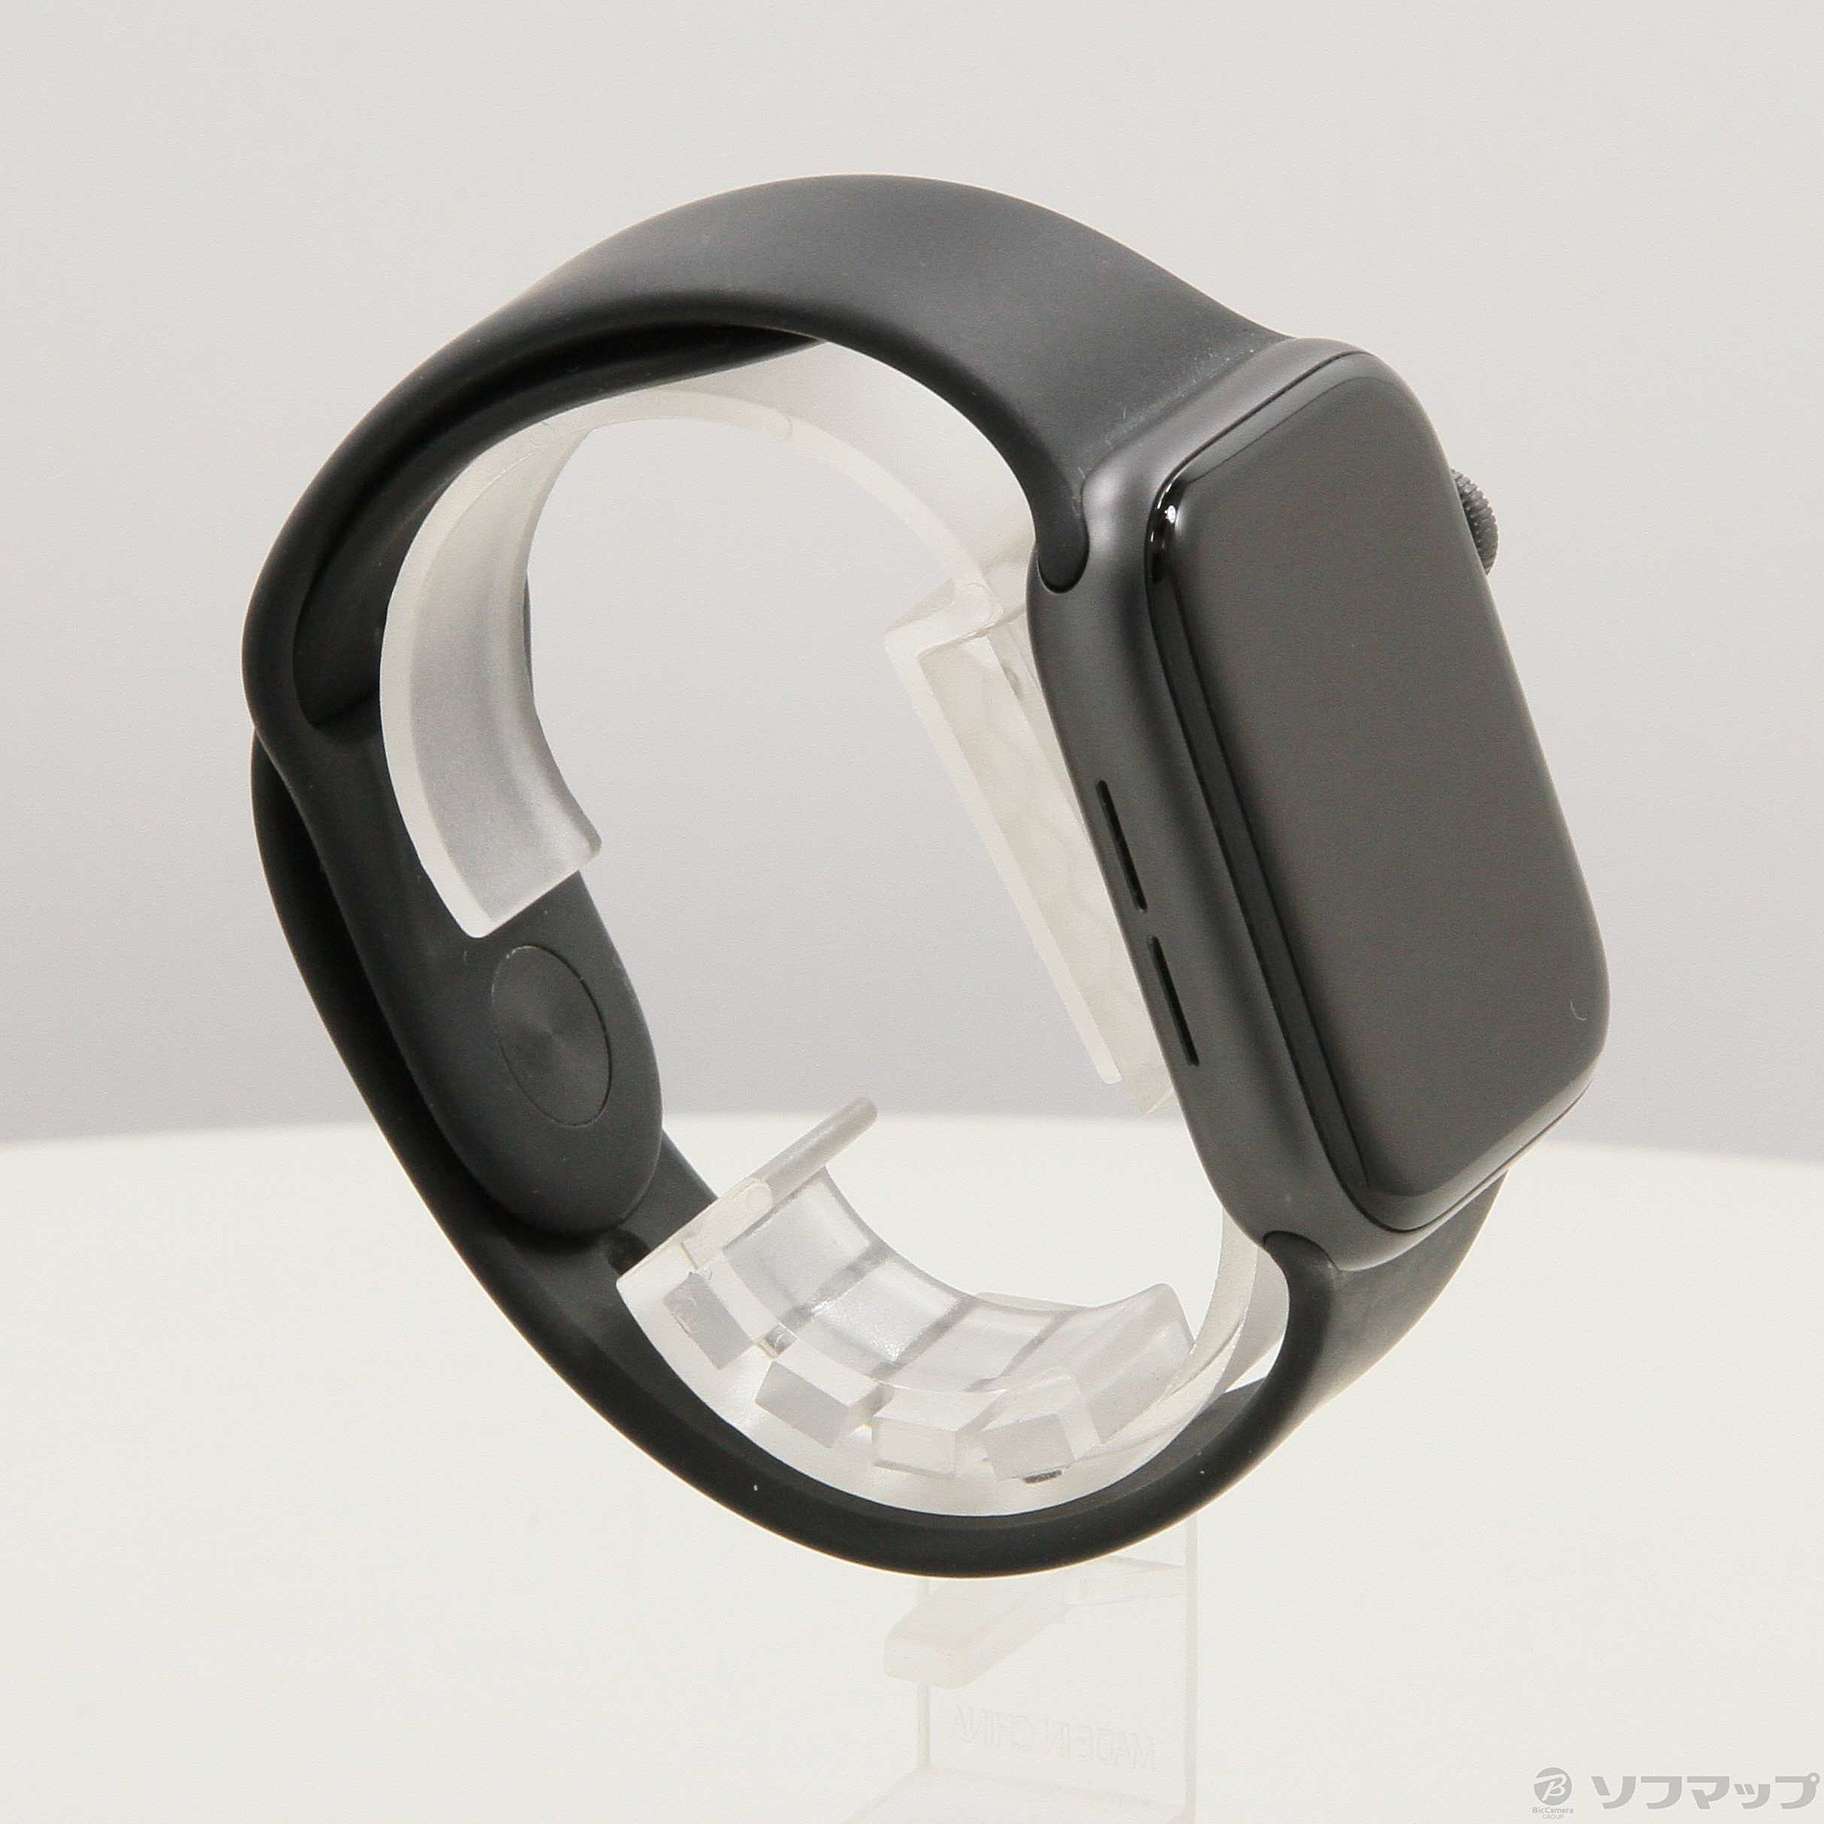 中古品〕 Apple Watch Series 4 GPS 44mm スペースグレイアルミニウム ...